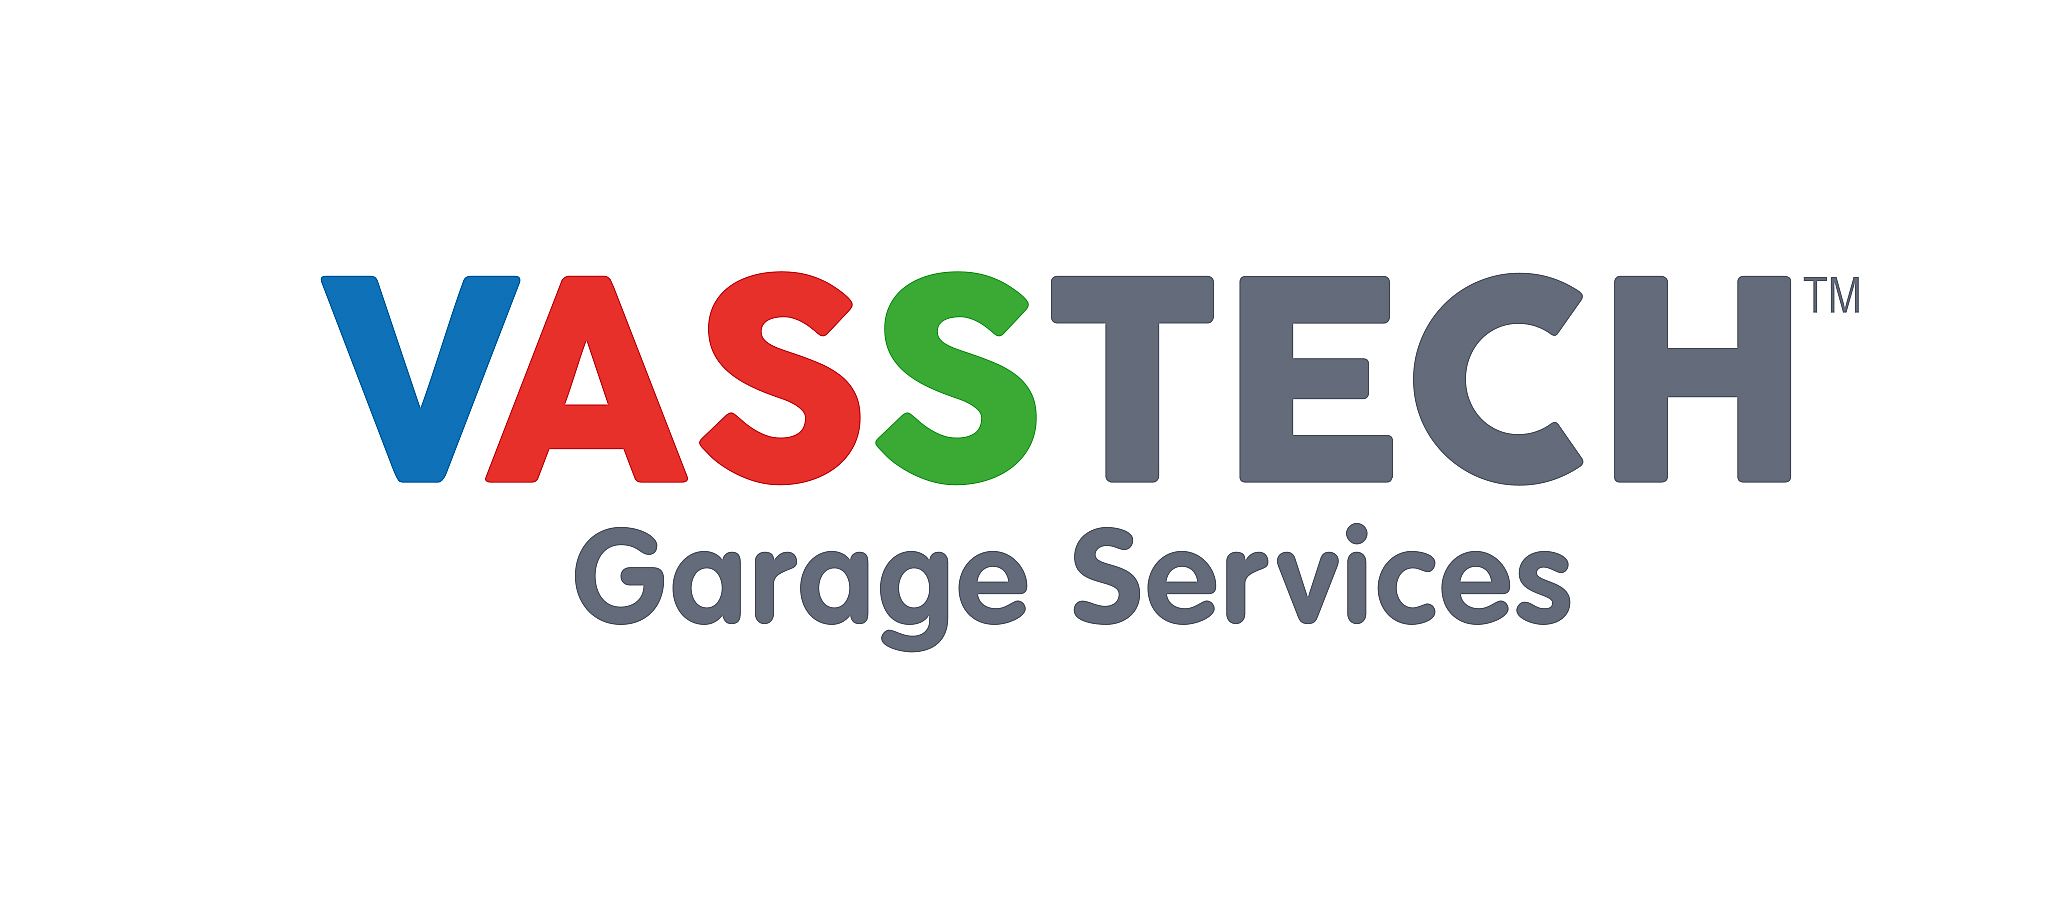 Vasstech Garage Services